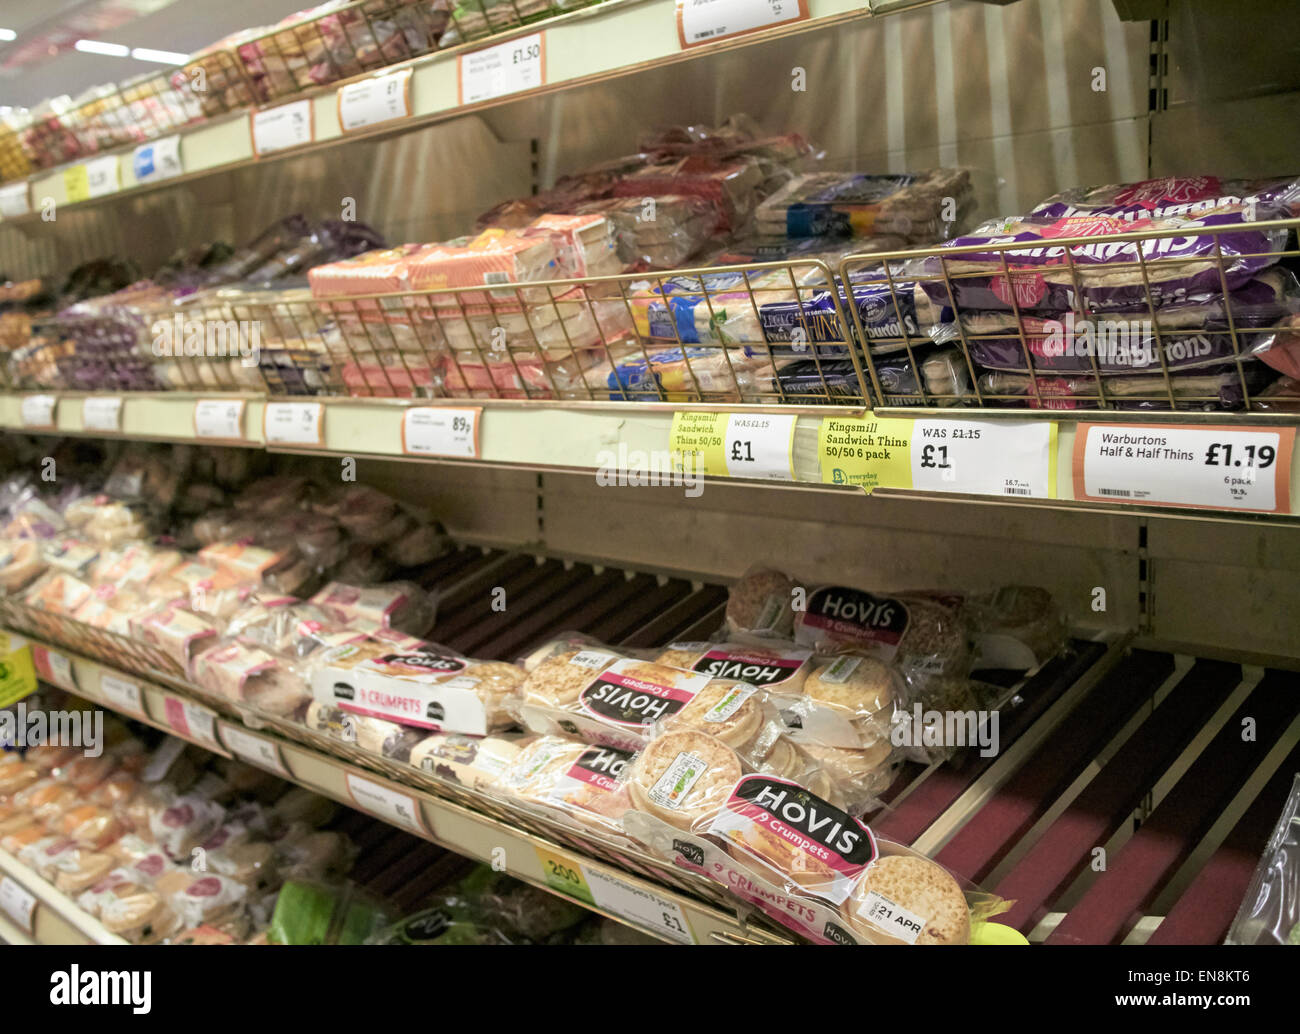 L'allée du pain en supermarché Morrisons au Royaume-Uni Banque D'Images